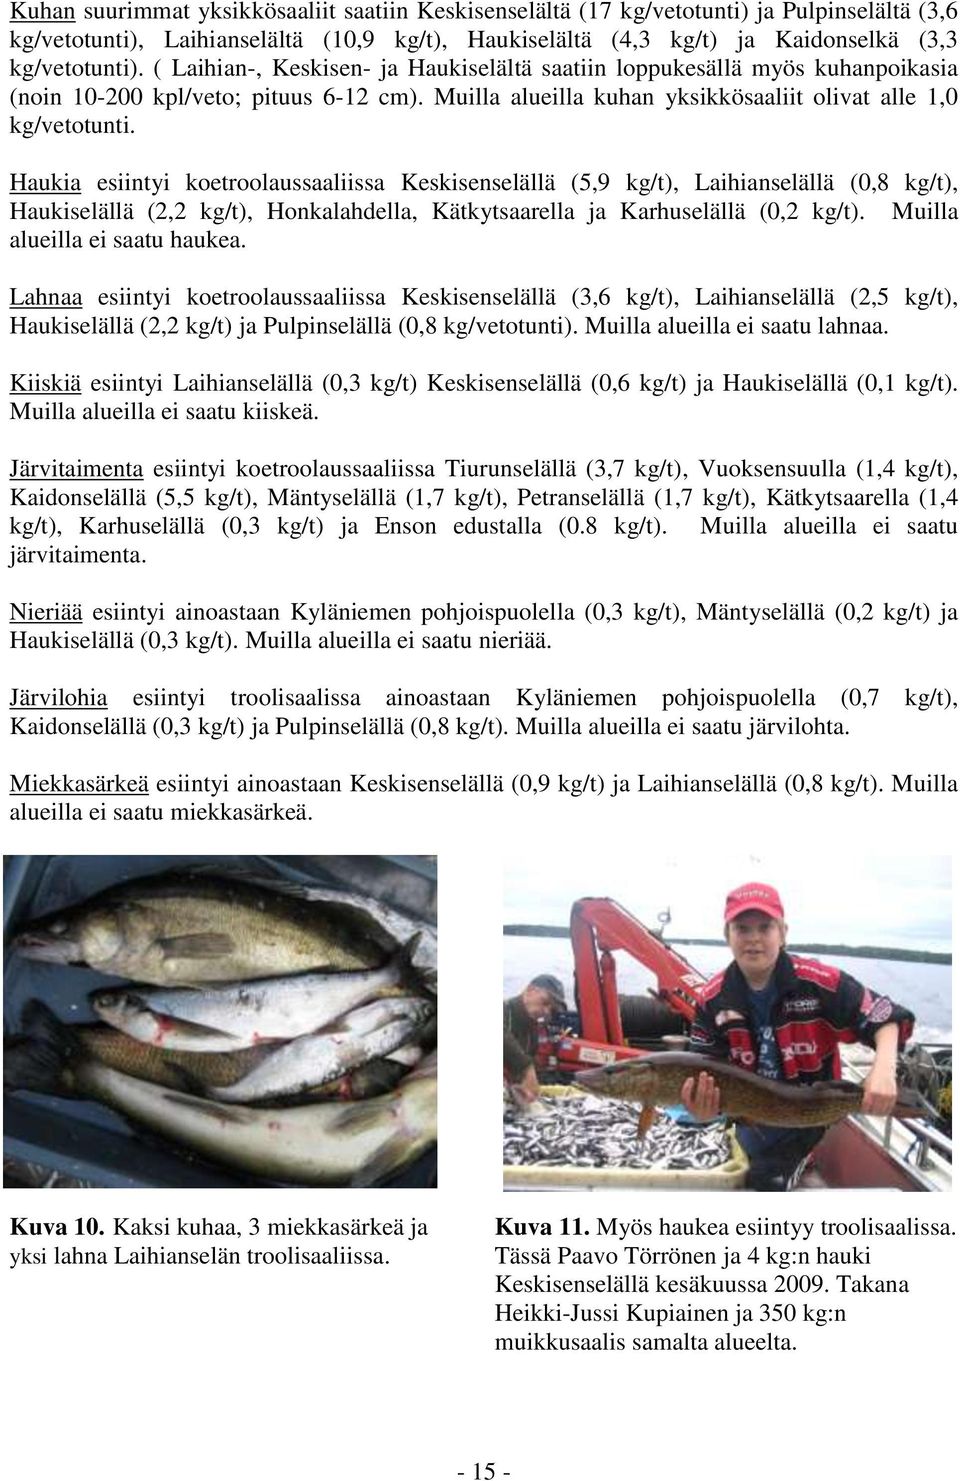 Haukia esiintyi koetroolaussaaliissa Keskisenselällä (5,9 kg/t), Laihianselällä (0,8 kg/t), Haukiselällä (2,2 kg/t), Honkalahdella, Kätkytsaarella ja Karhuselällä (0,2 kg/t).